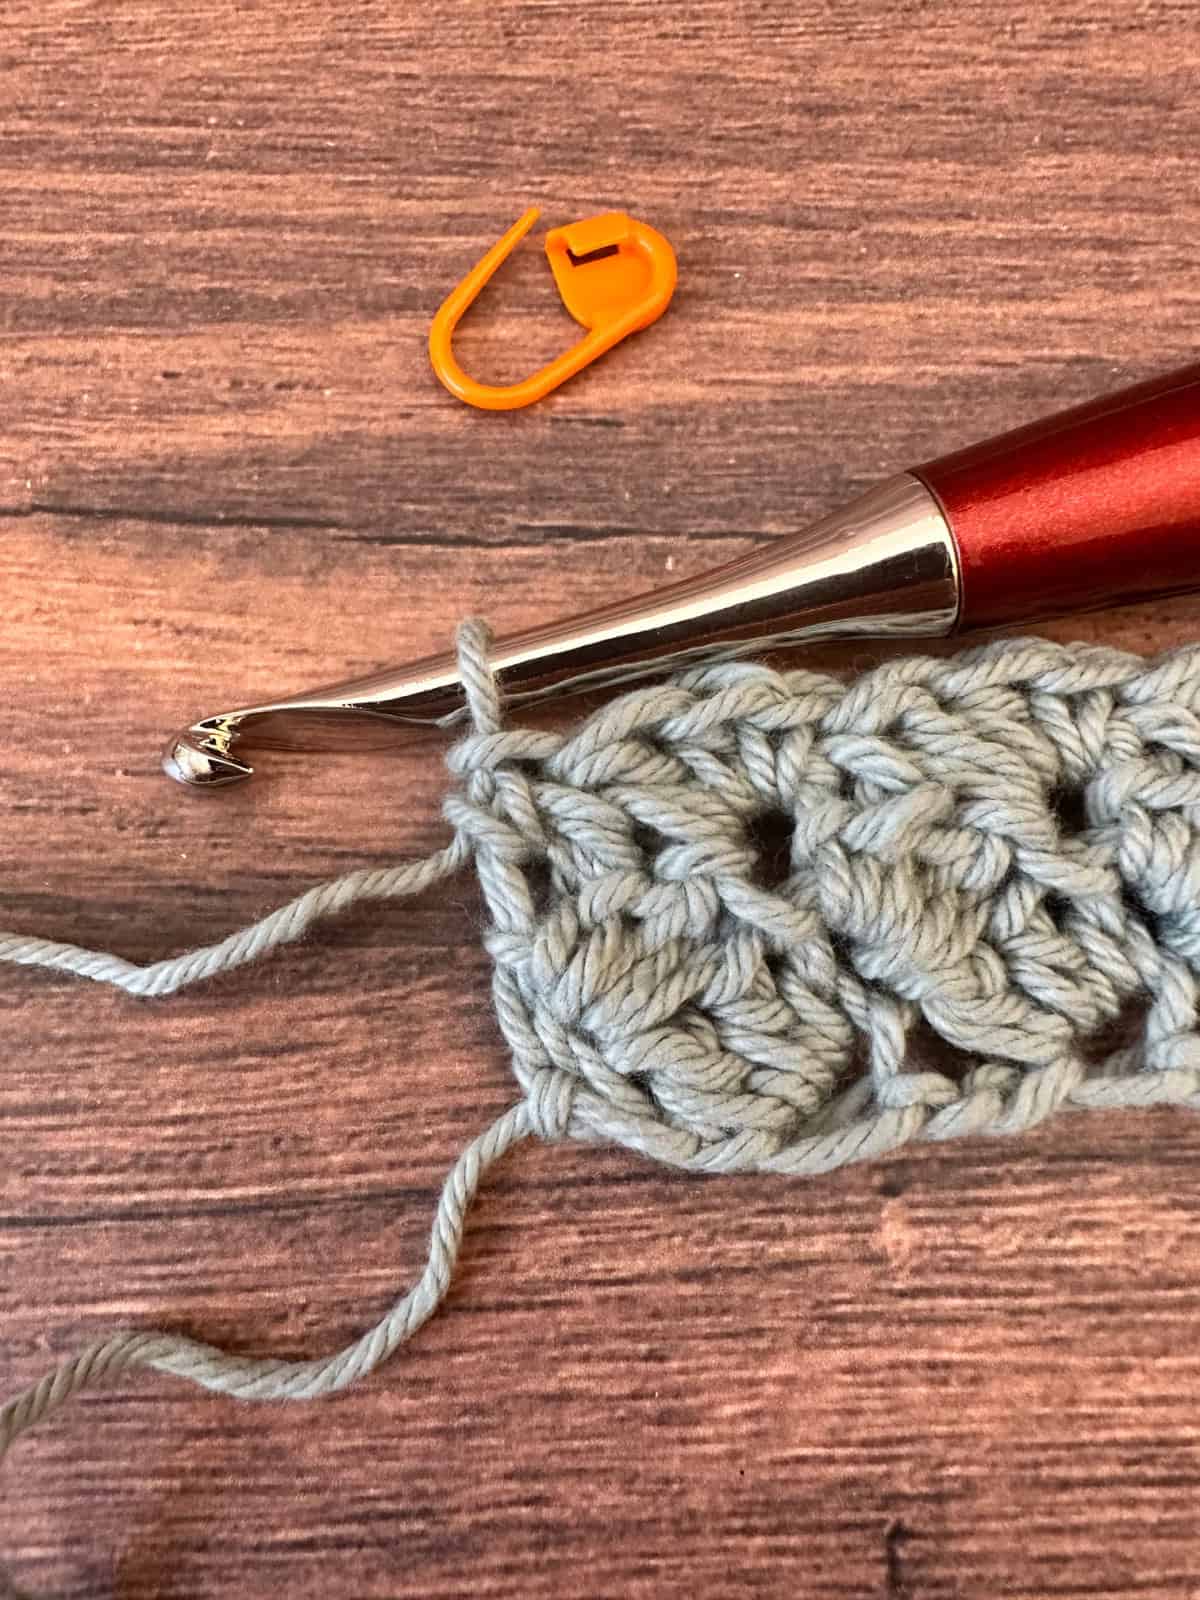 Single crochet in chain 1.